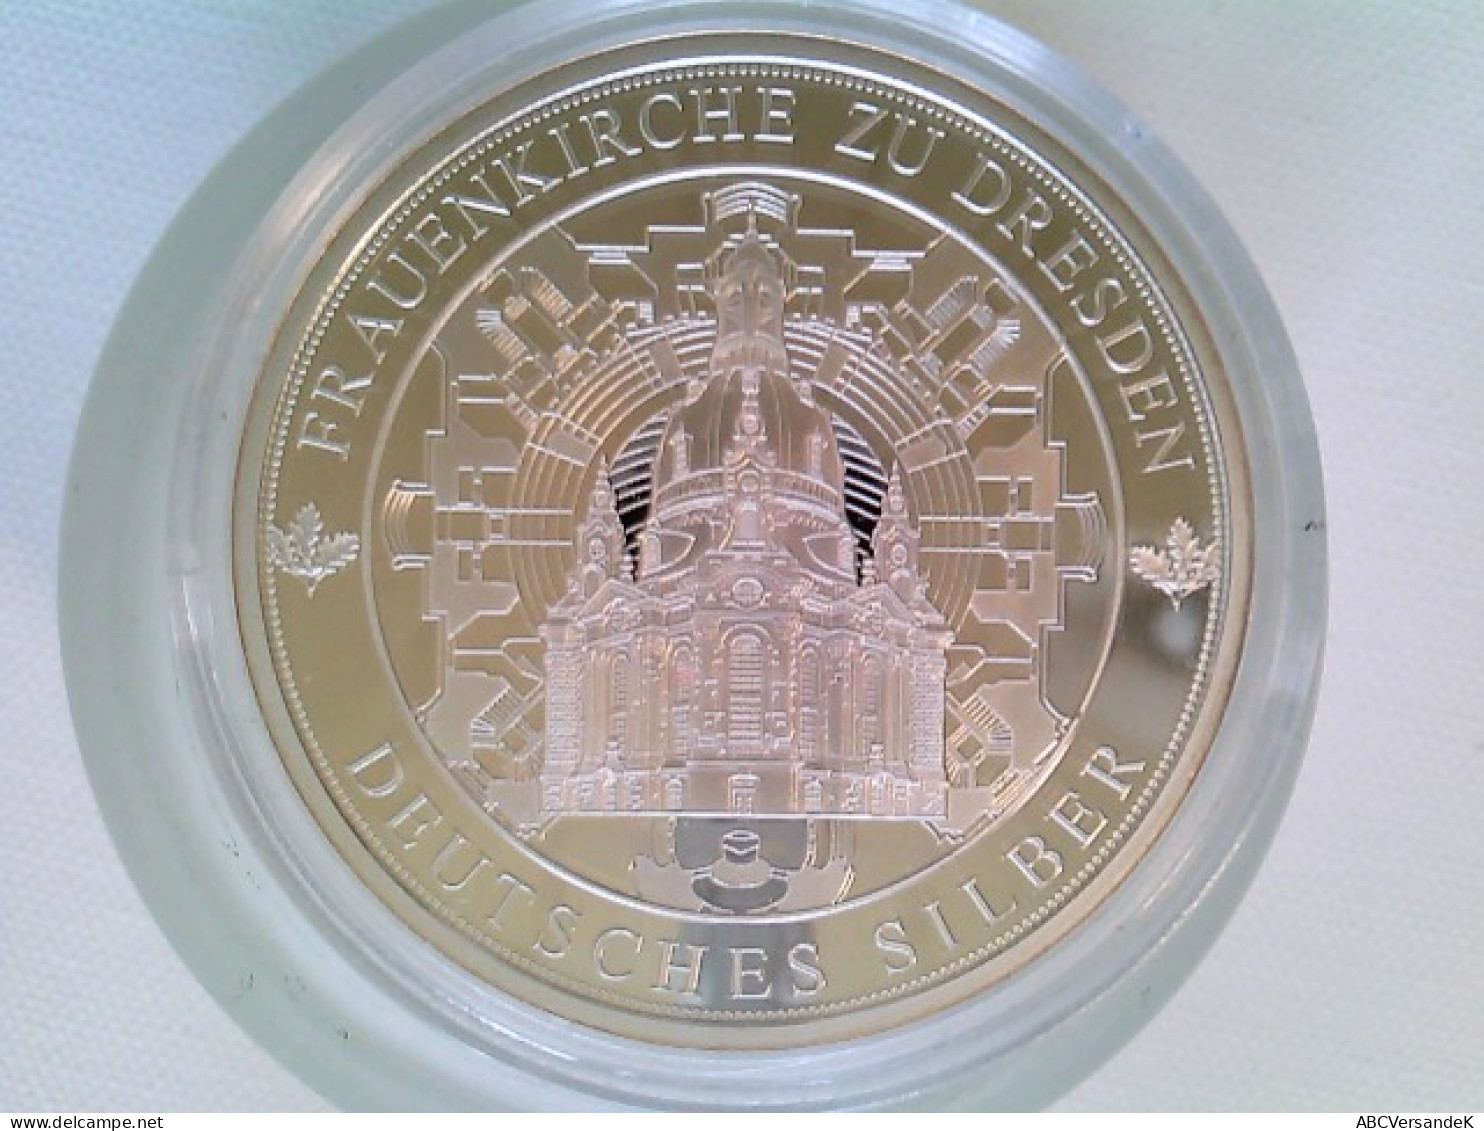 Medaille, Frauenkirche Zu Dresden, 333/1000 Silber, Ca. 40 Mm - Numismatics